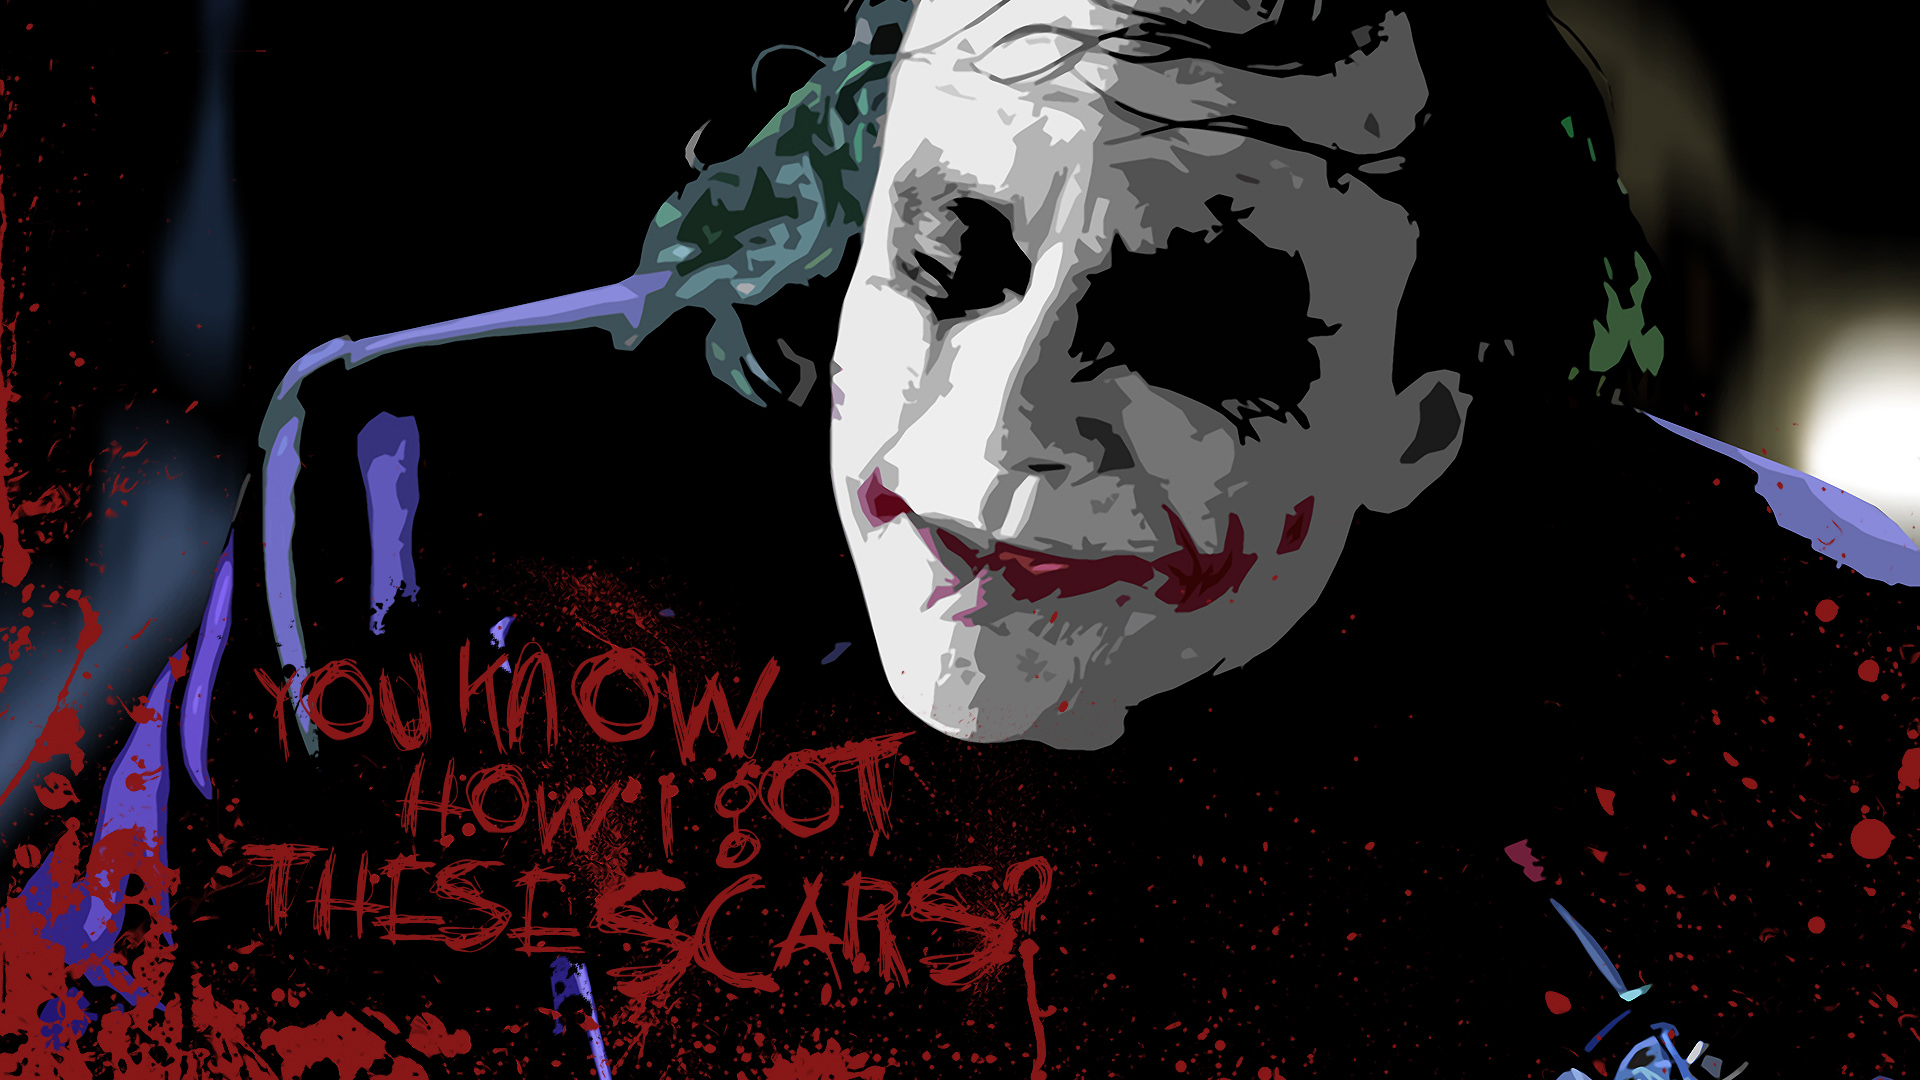 movies, The Joker, The Dark Knight - desktop wallpaper